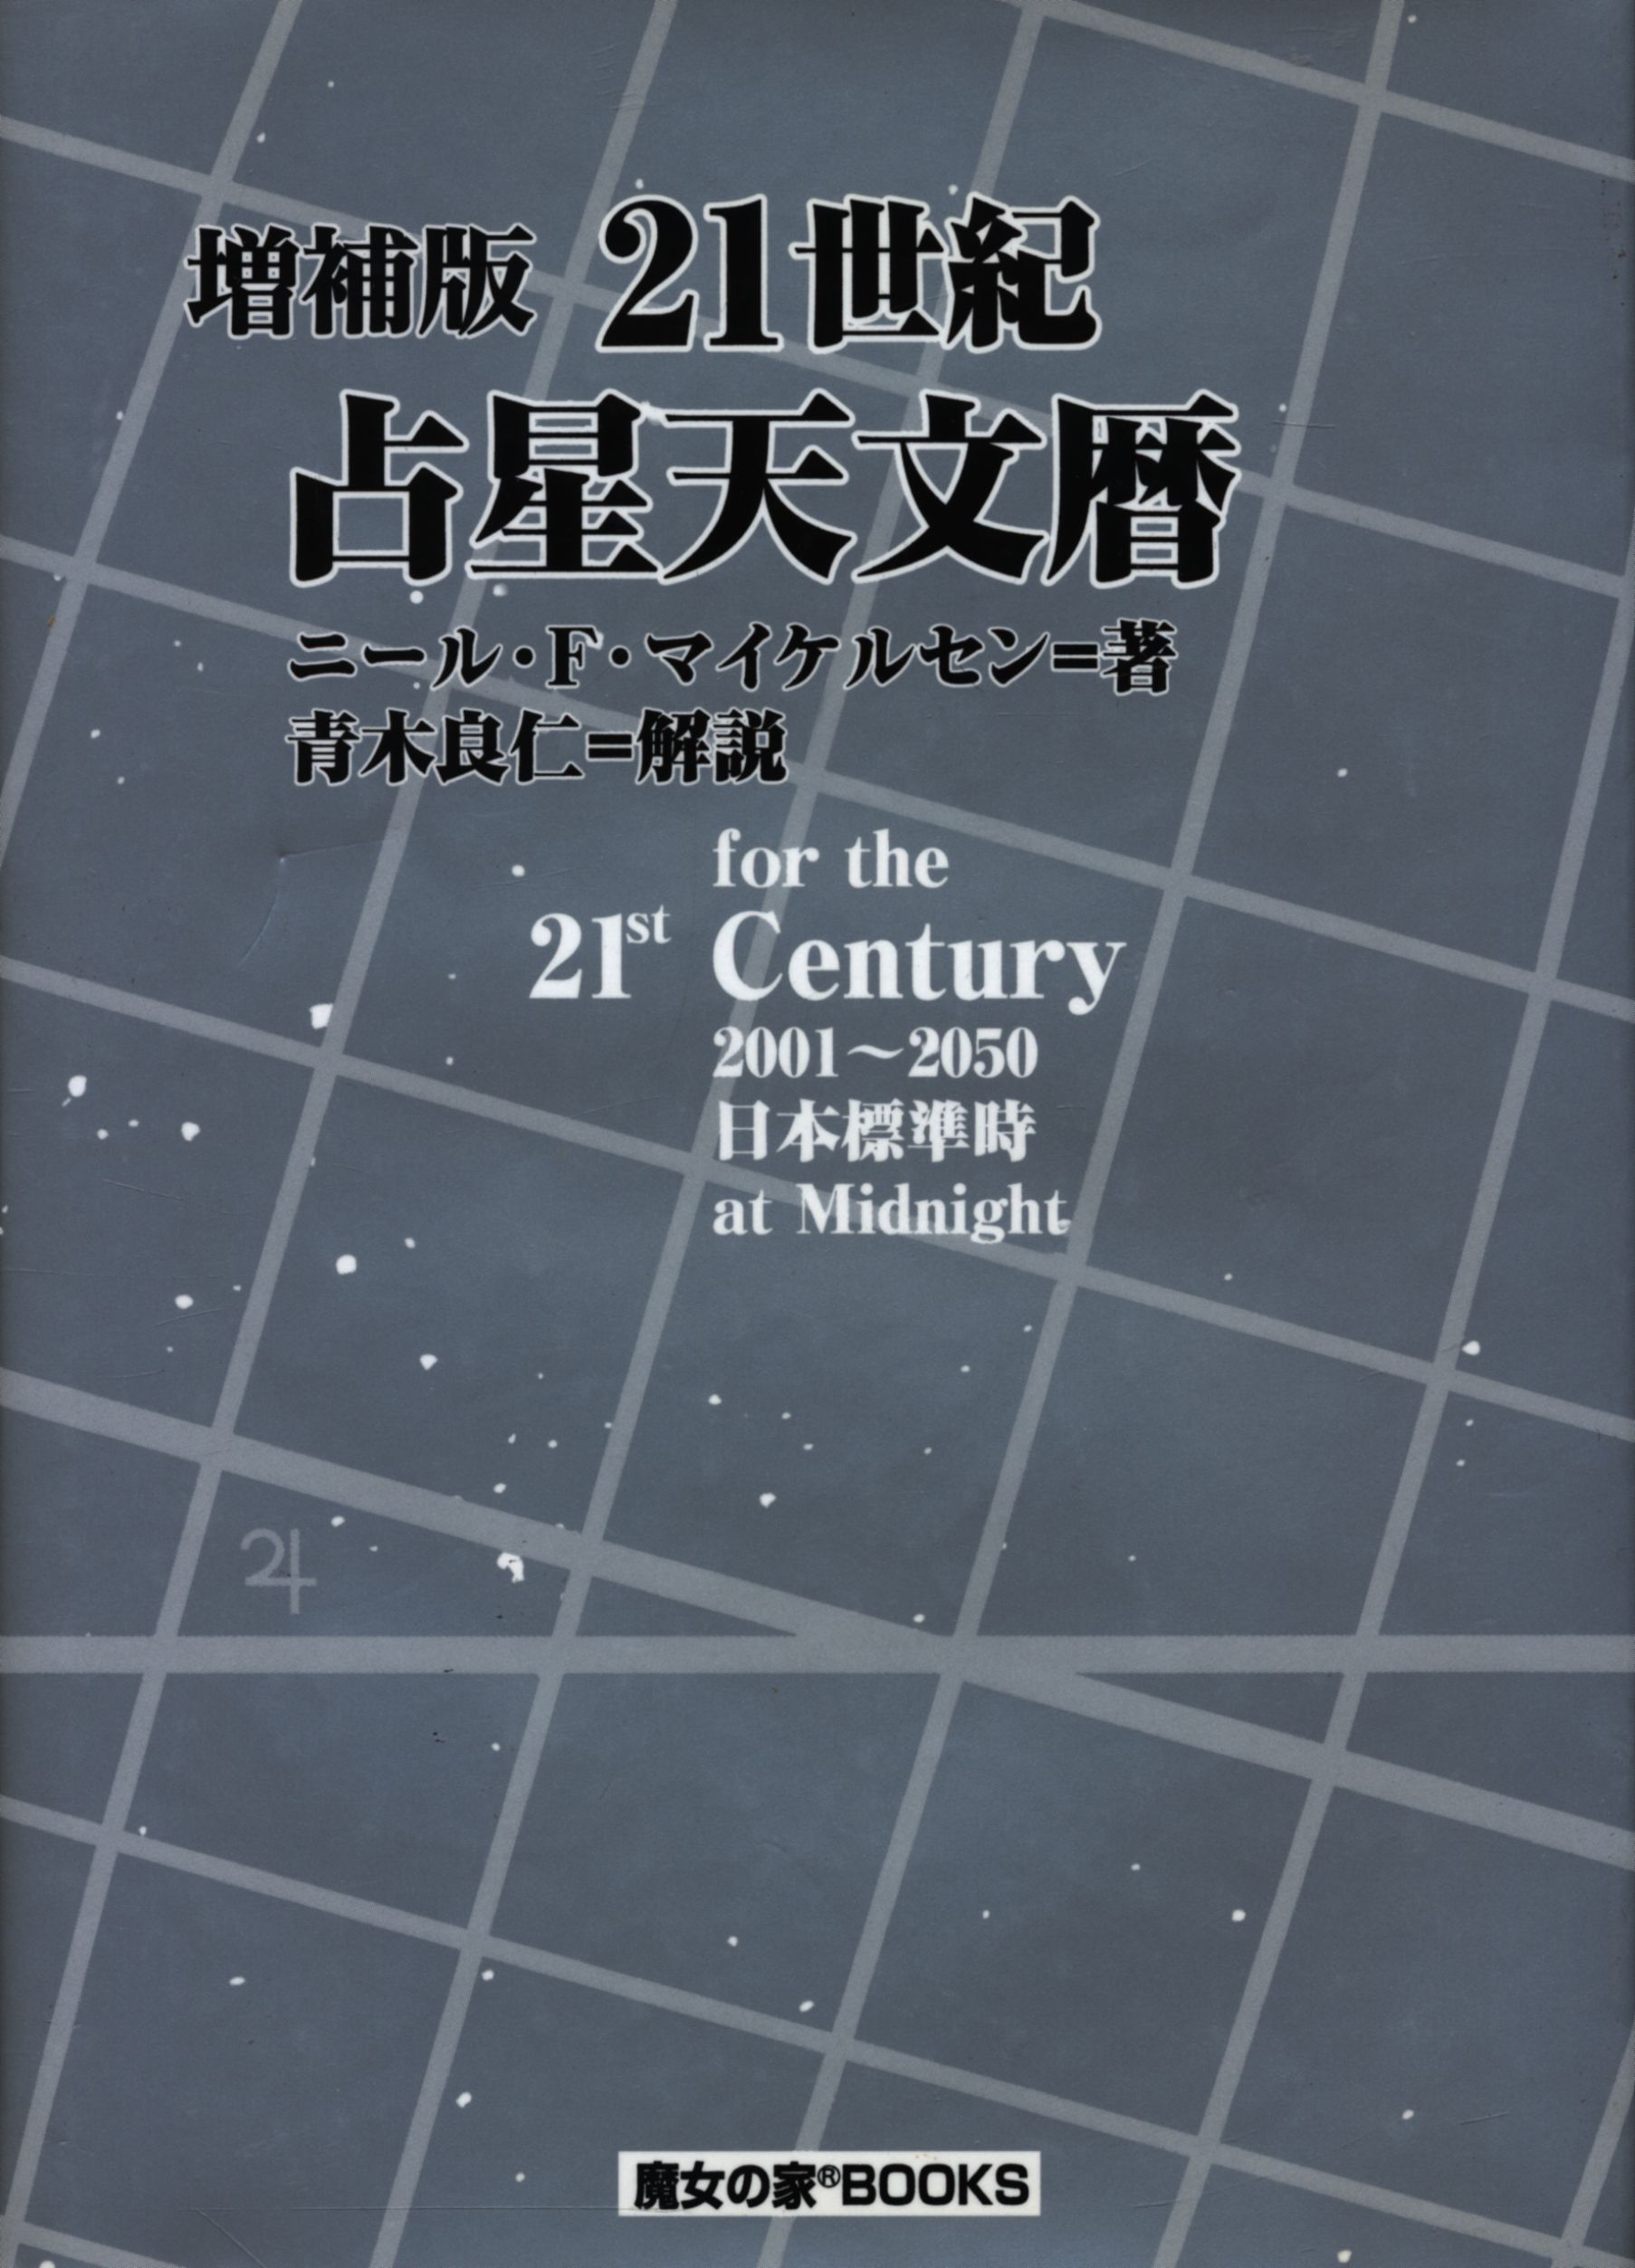 魔女の家Books 21世紀占星天文暦 、 21世紀日本占星天文暦 - sas 